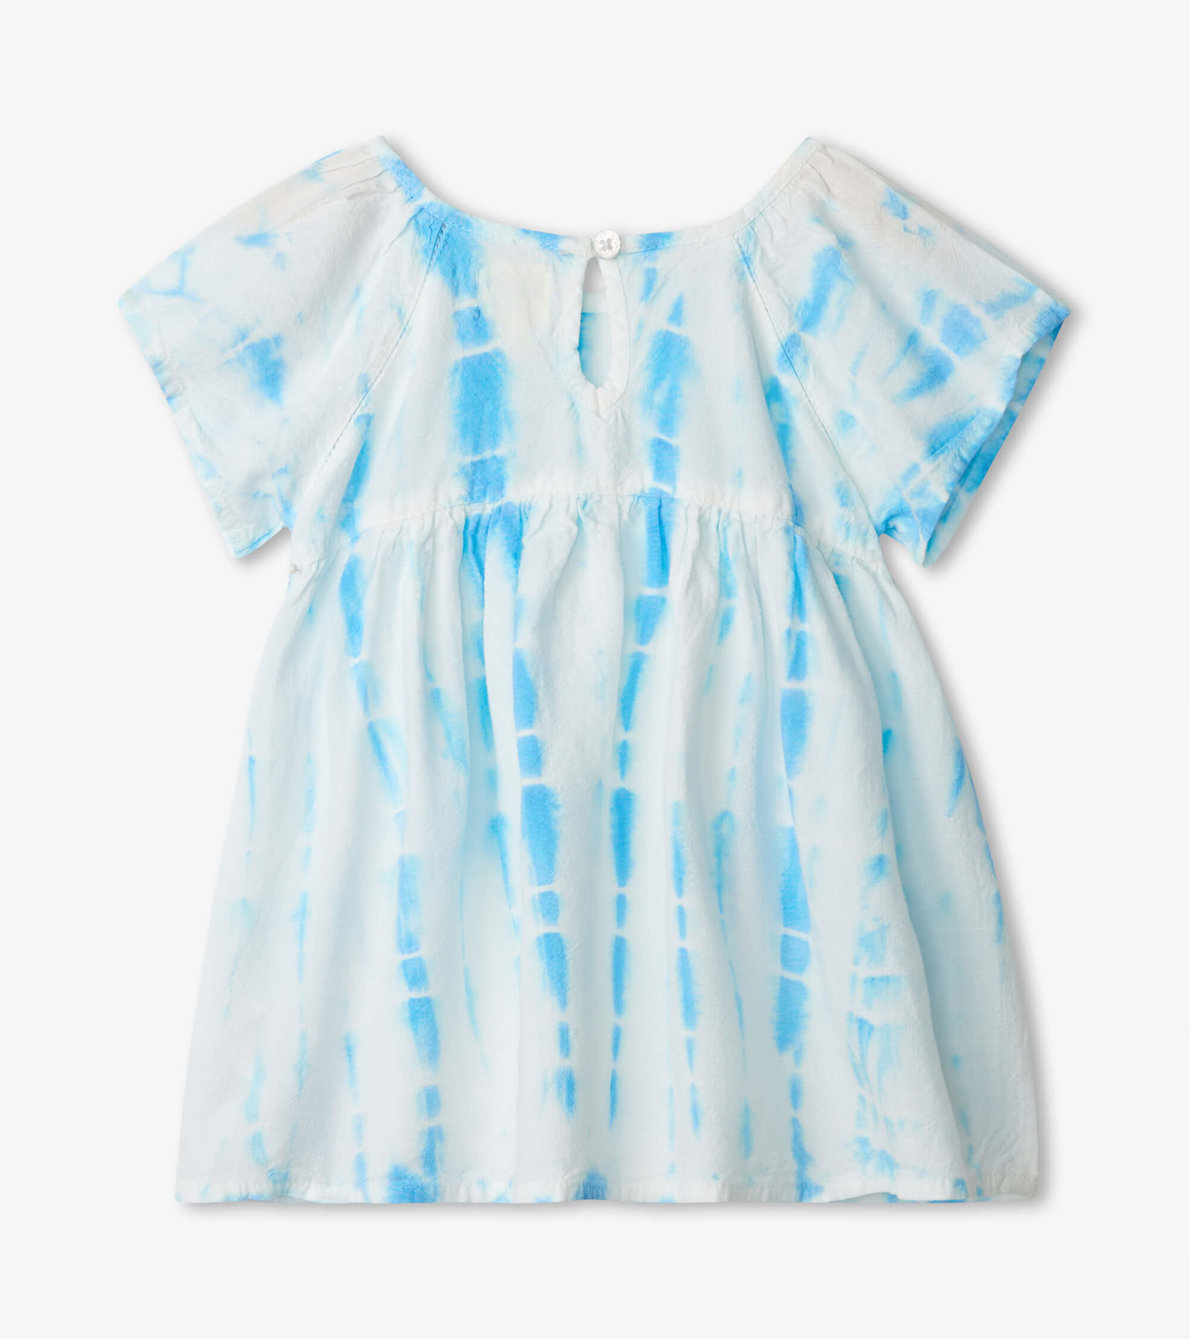 Agrandir l'image de Robe tissée pour bébé – Rayures bleues décolorées